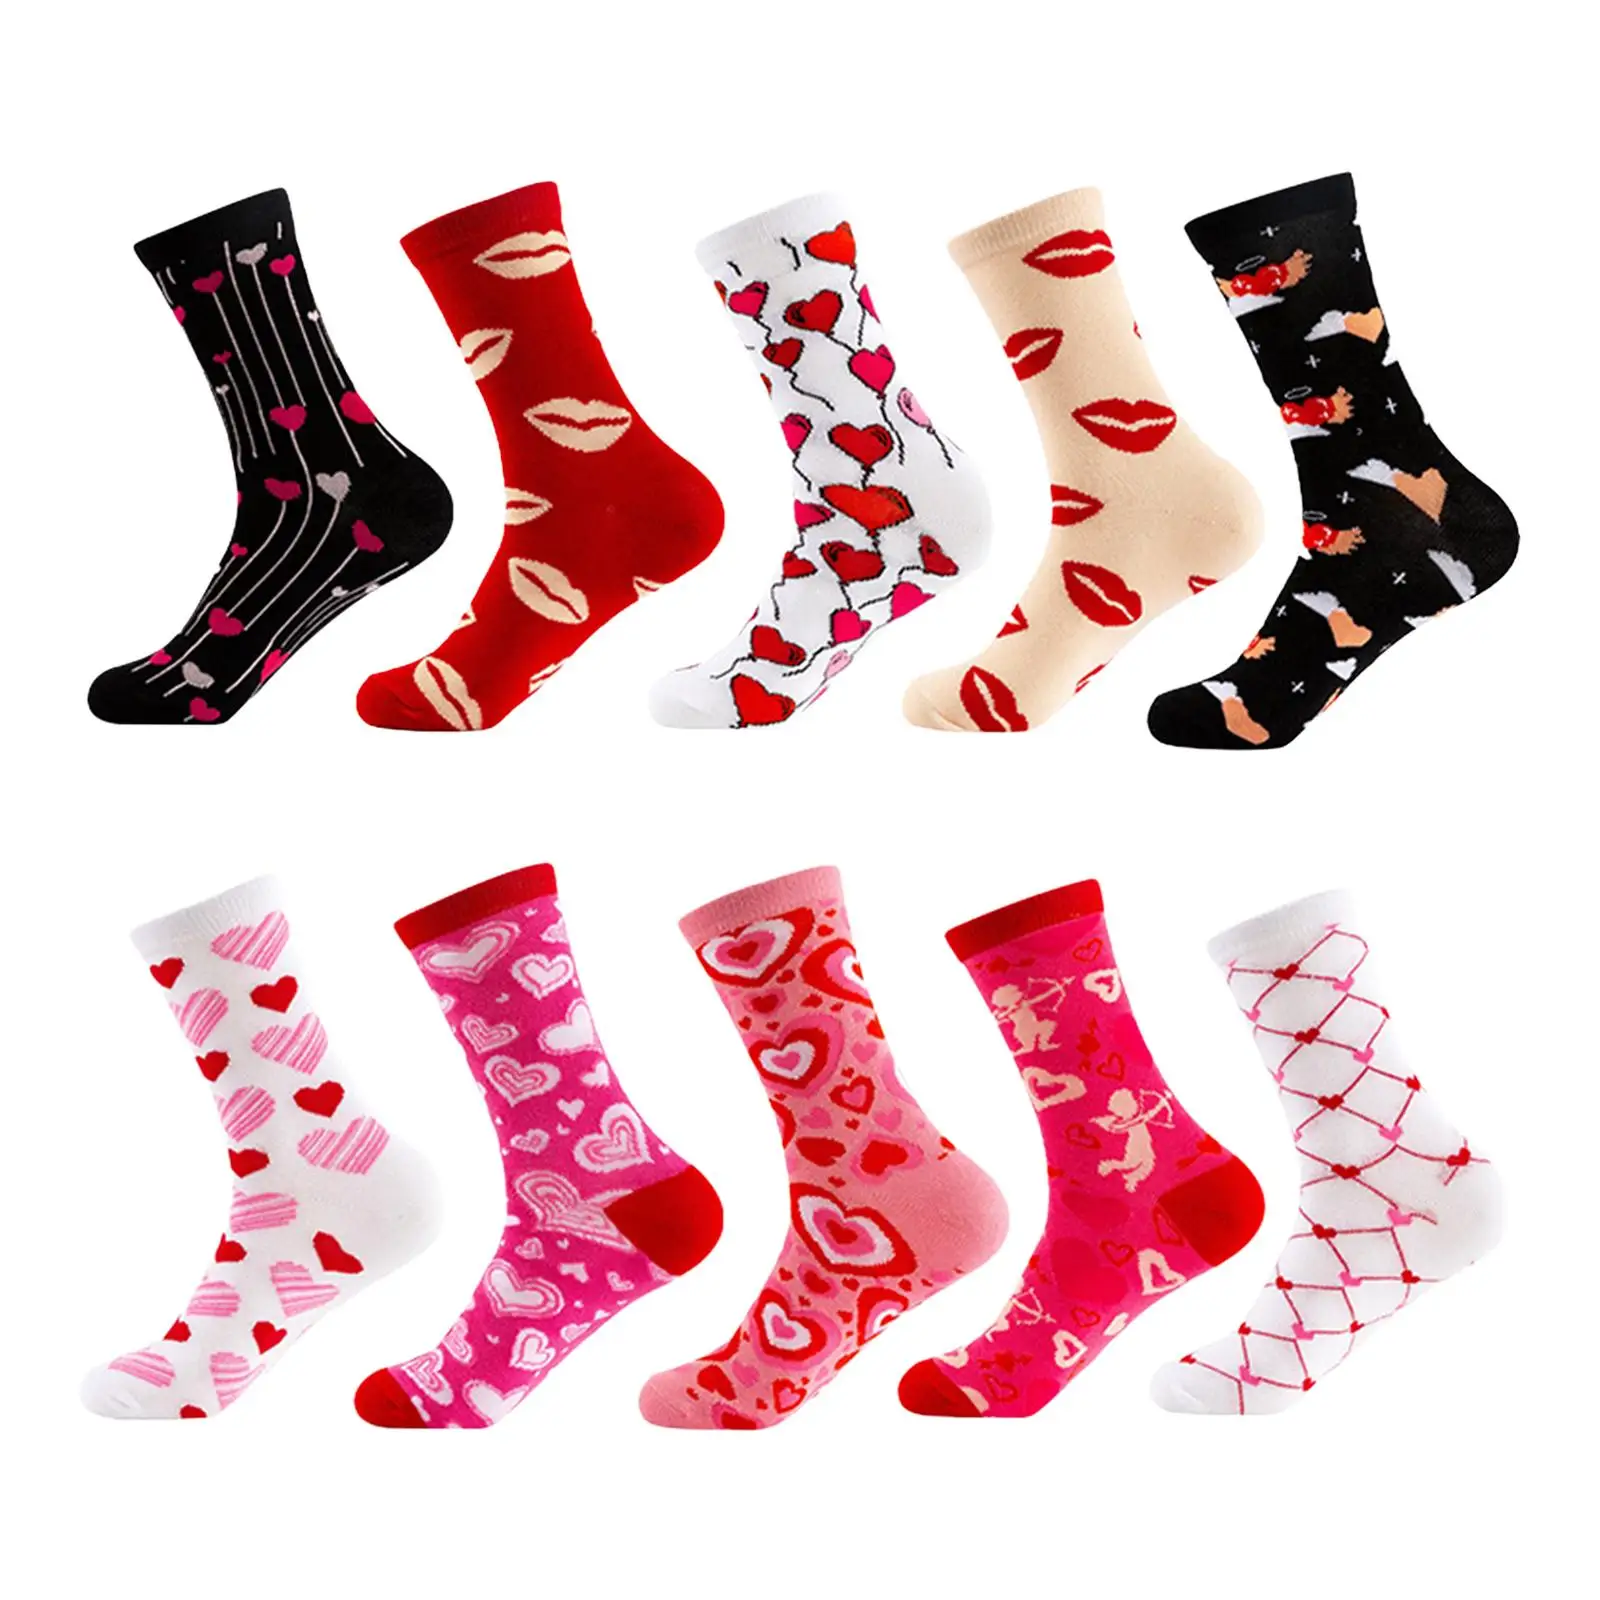 

10 Pairs Valentine's Day Socks Heart Socks for Women Girls Dress Socks Mid Tube Socks for Couples Girlfriend Students Him Unisex